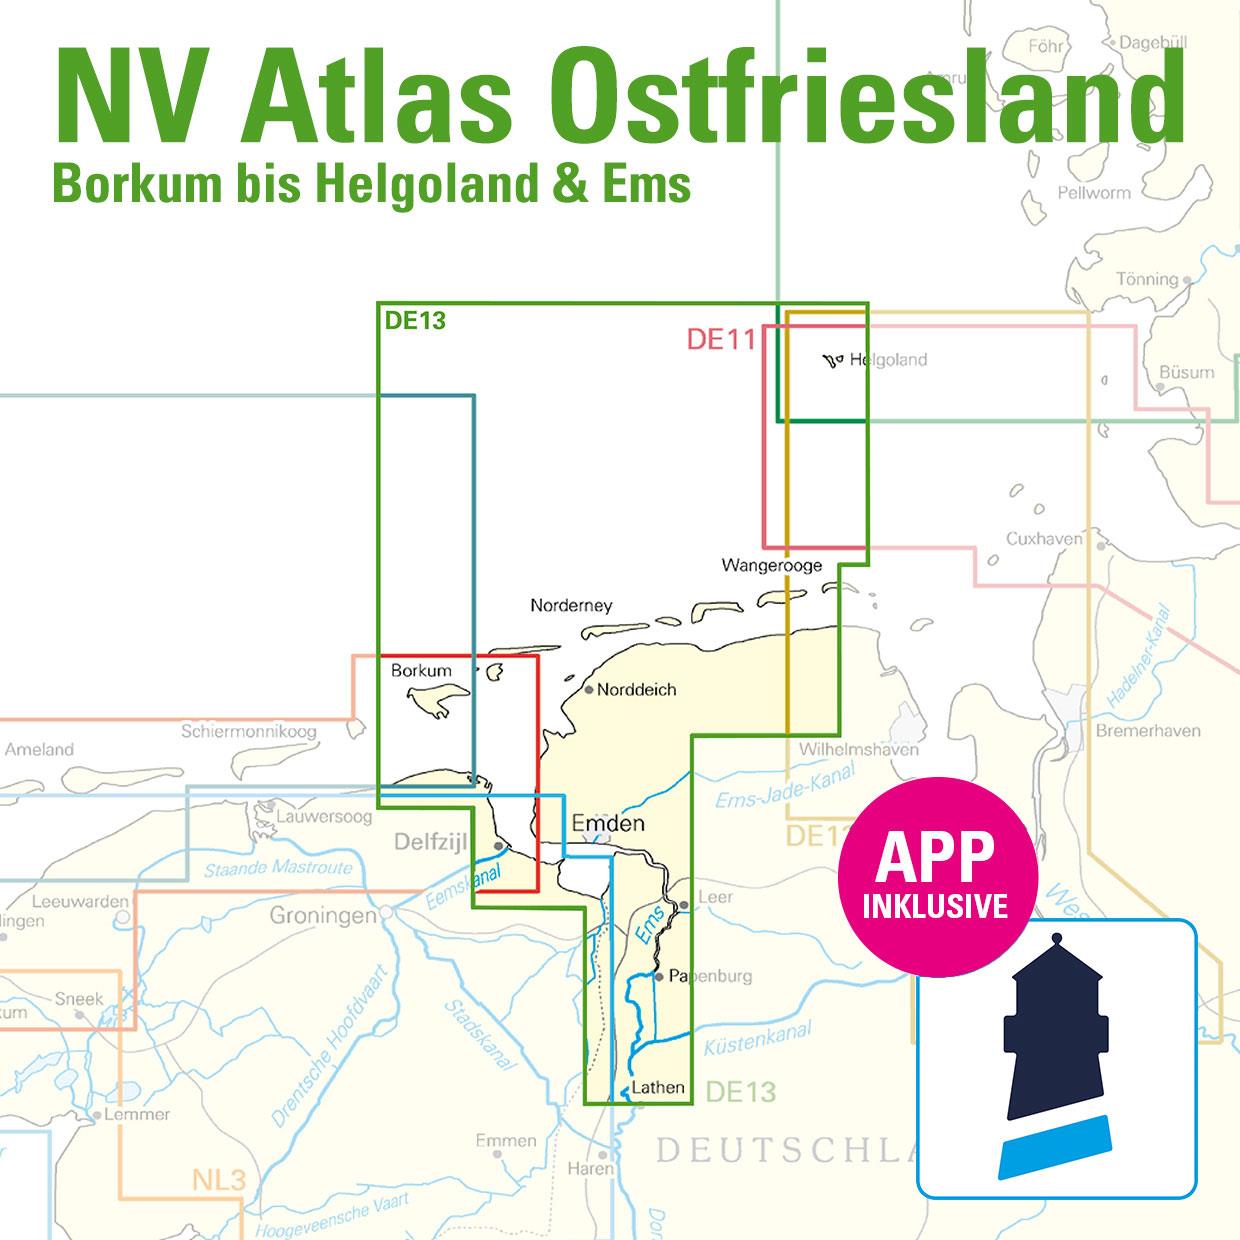 Subscription - NV Charts Nordsee DE13 - Borkum bis Helgoland & Ems